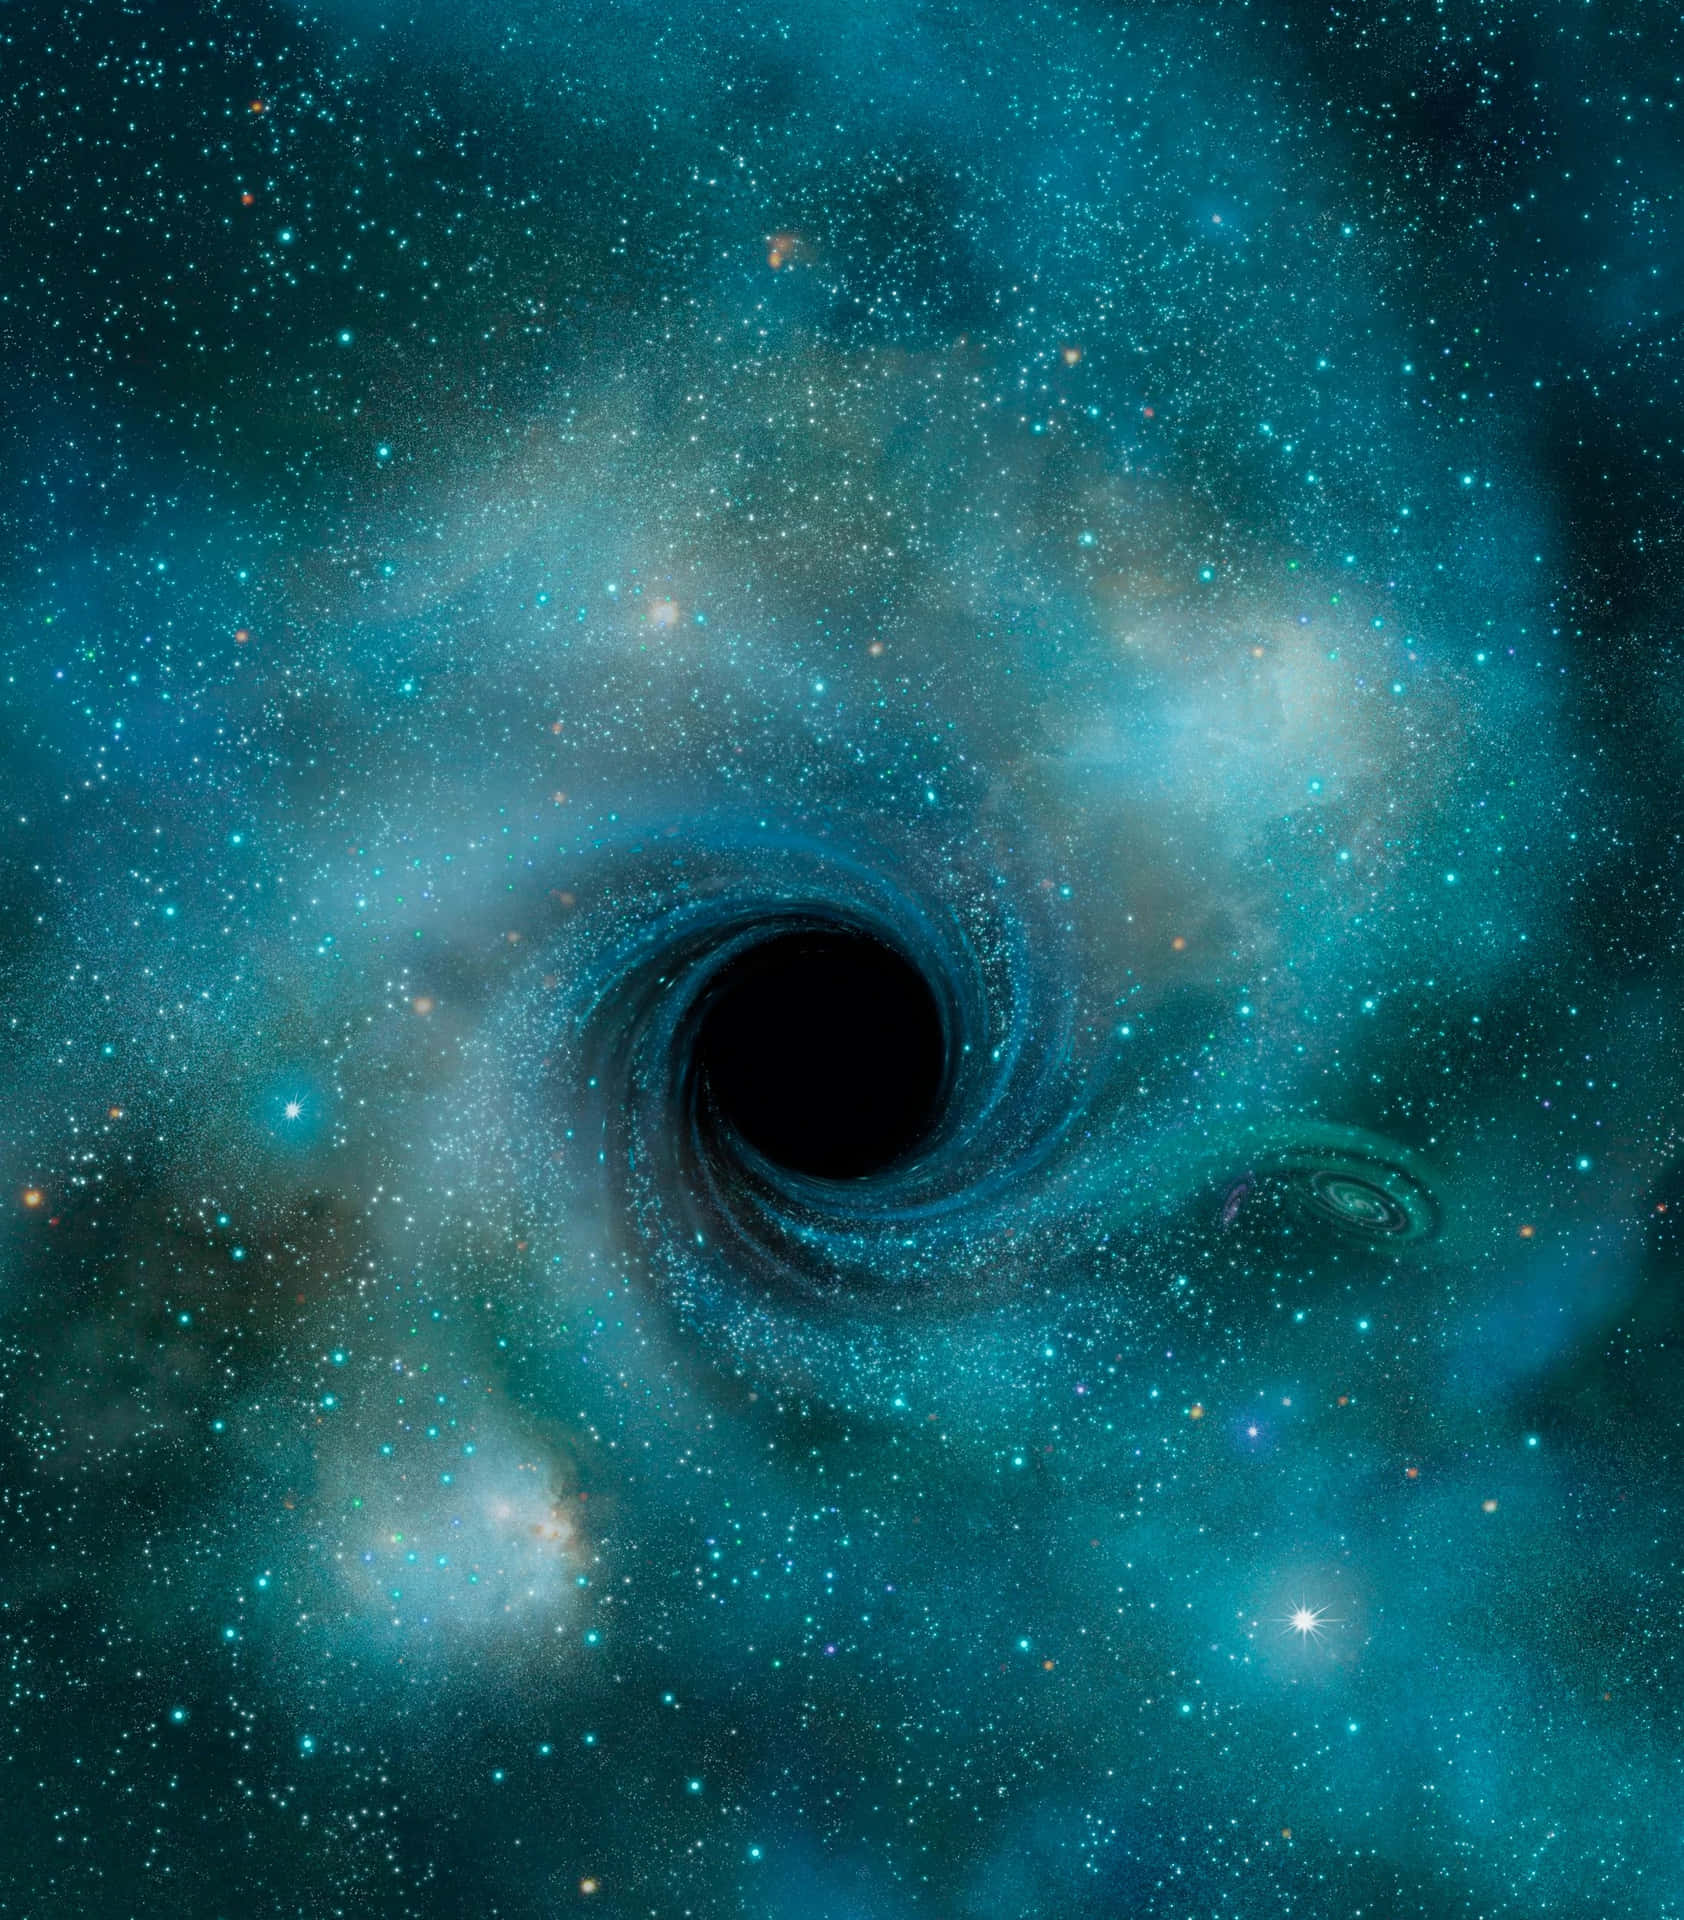 Nuevaimagen De Un Agujero Negro Supermasivo Capturada Por El Telescopio Hubble.